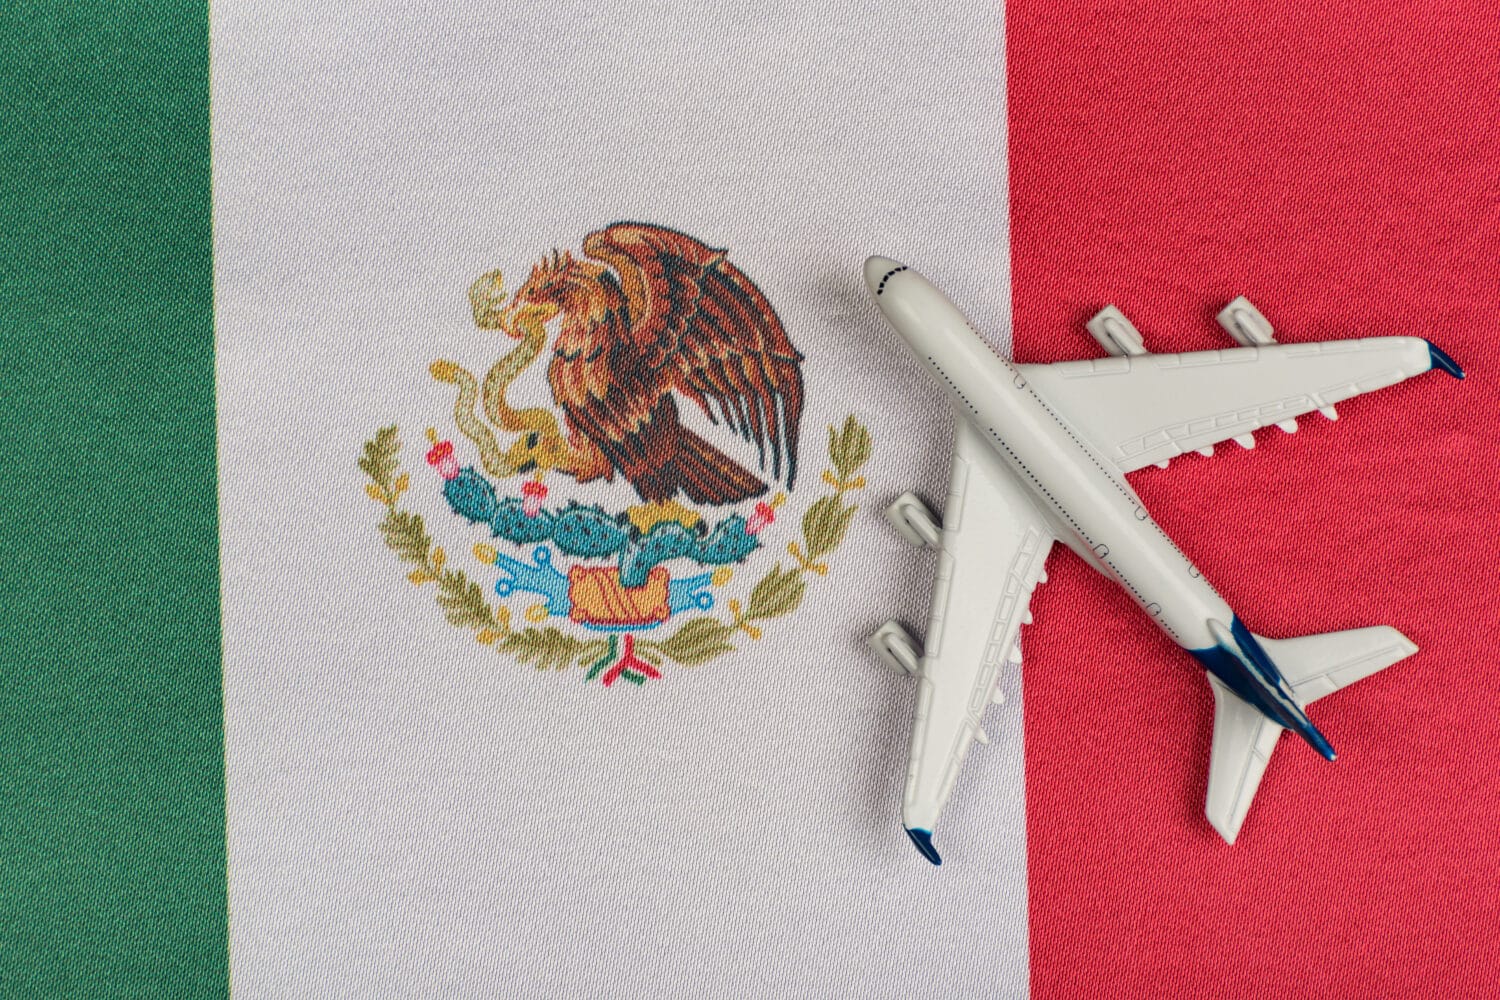 Vuelo seguro, un cuestionario que debes llenar si quieres viajar a México